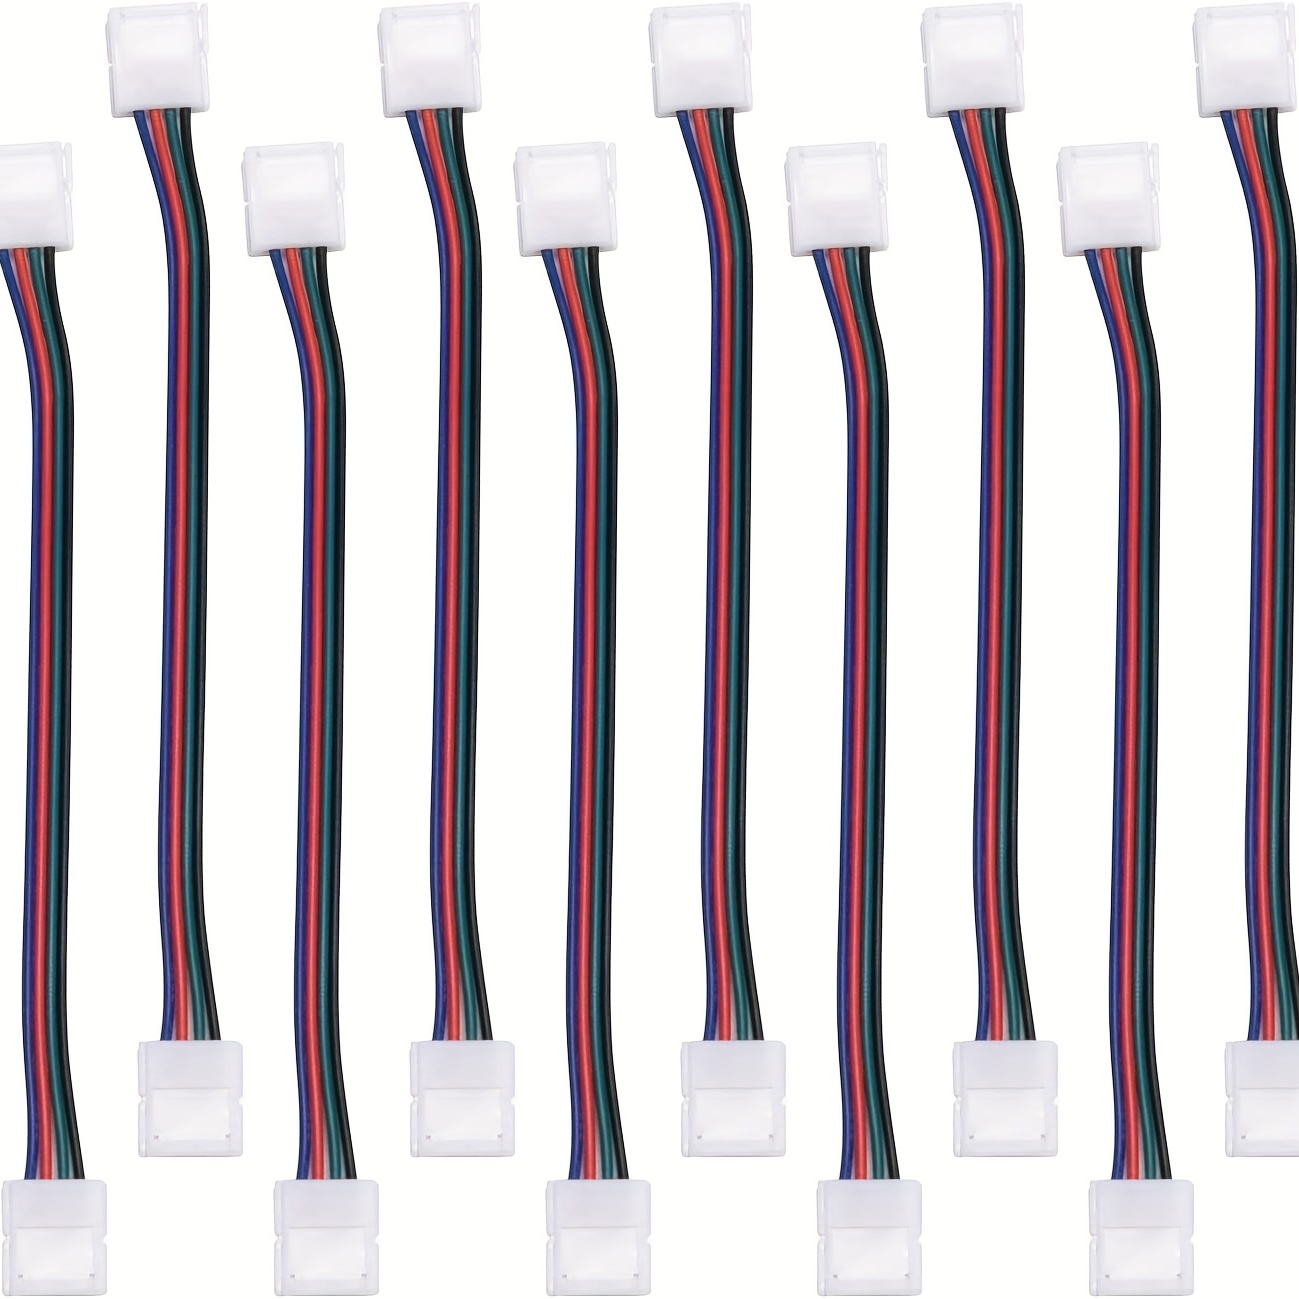 Connecteur d'Extension de Bande LED RGB 5050, 10mm, 4 Broches, 5